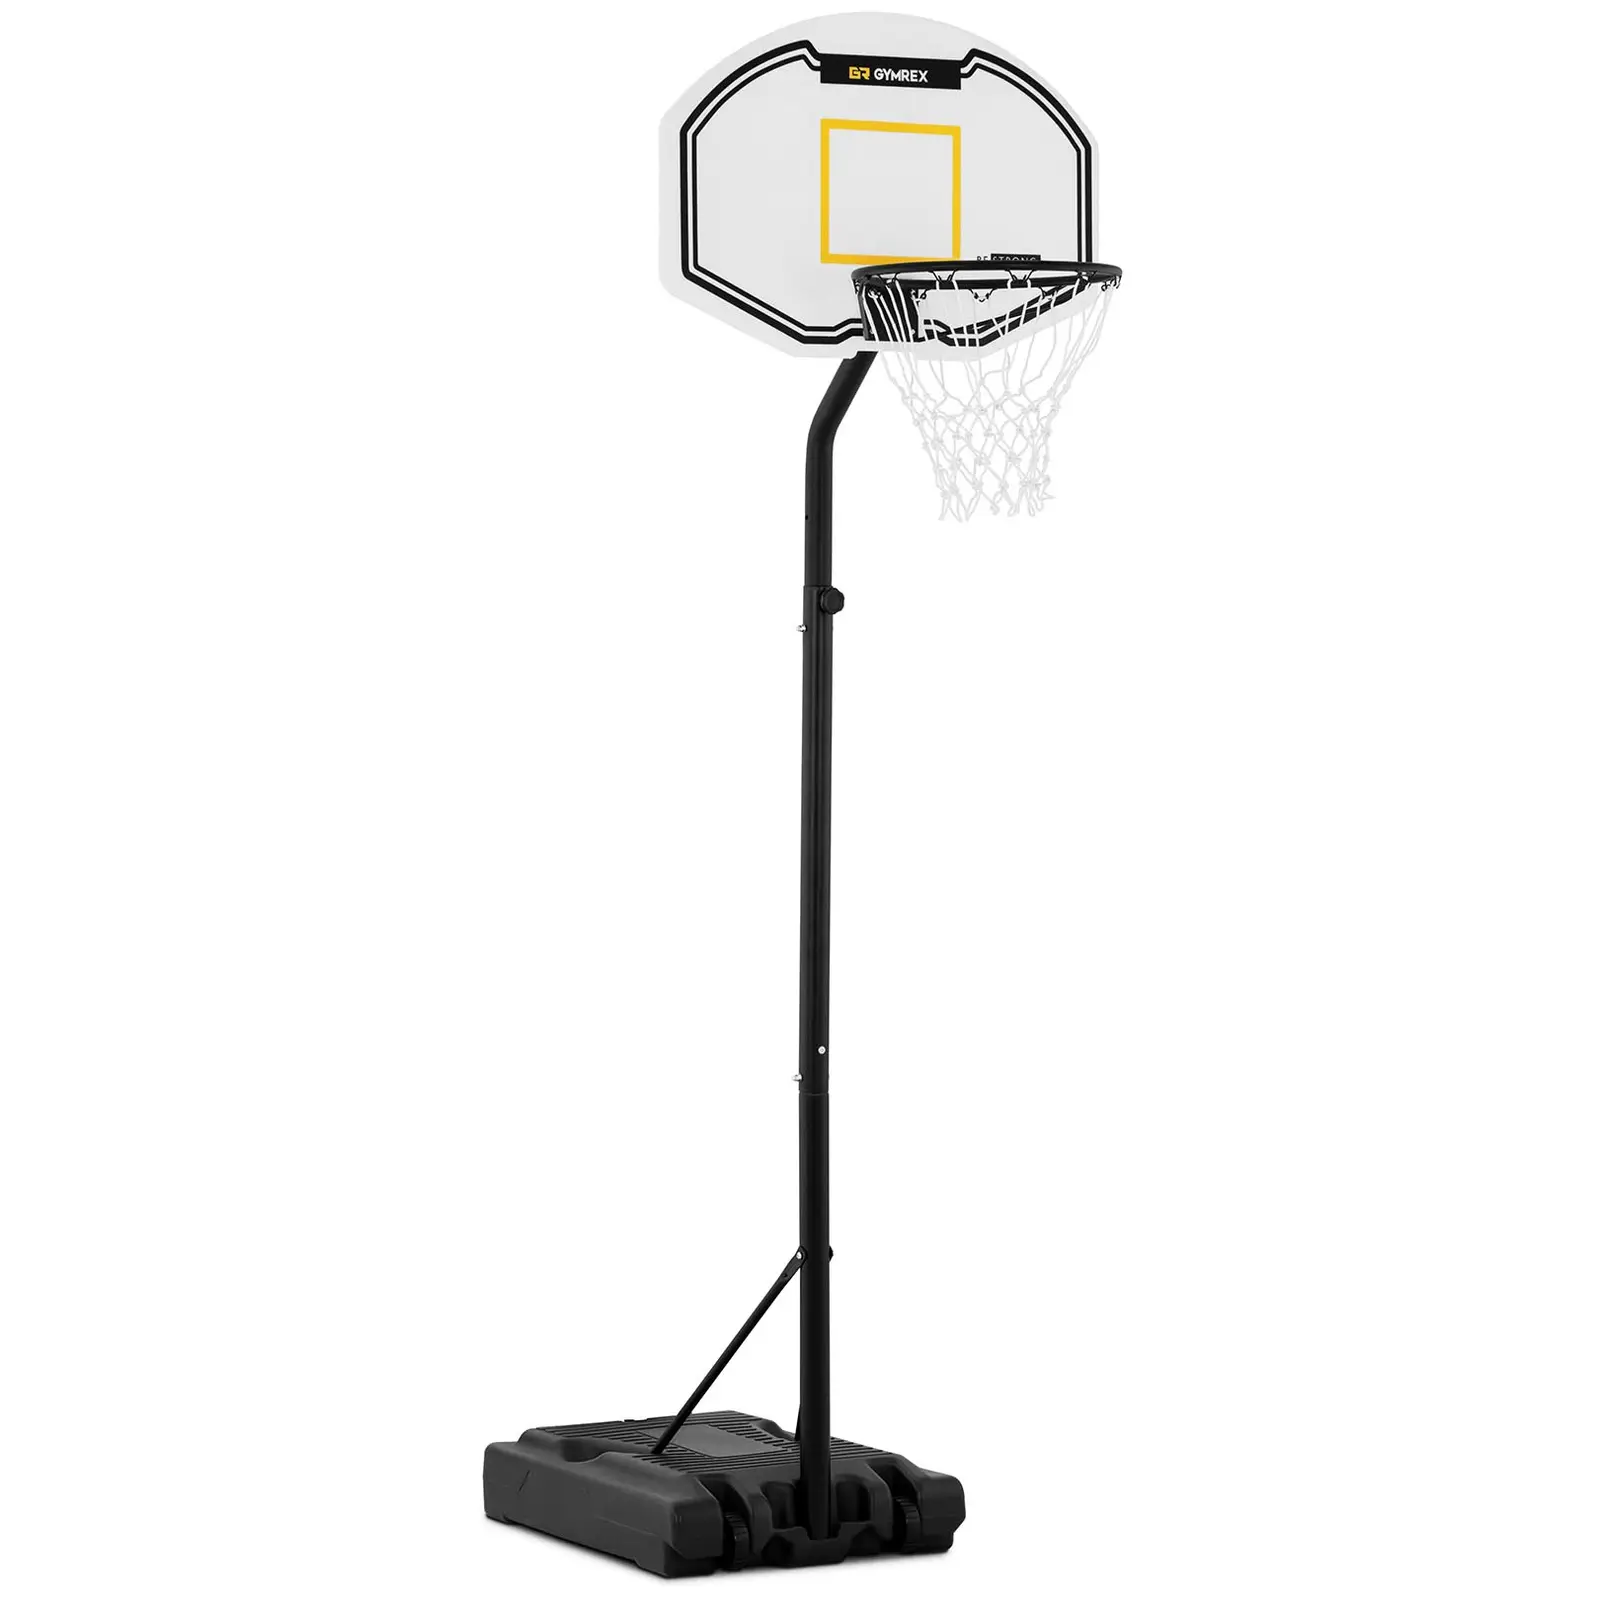 Basketbalpaal - in hoogte verstelbaar - 190 tot 260 cm - witte net